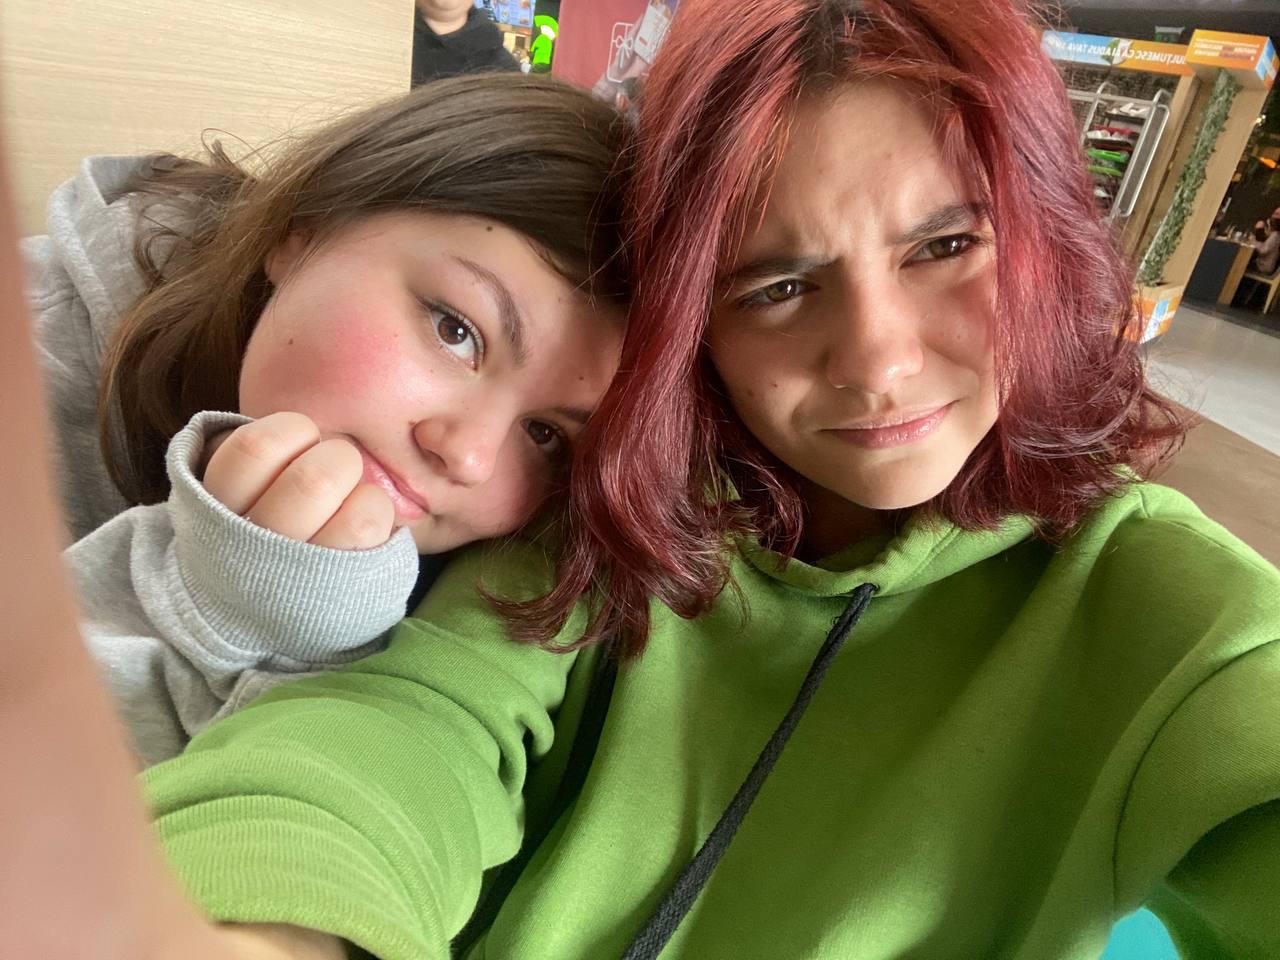 Două adolescente din Ucraina au devenit cele mai bune prietene la Liceul de Artă din Sibiu. Orașul nostru le amintește de casă, doar că aici se simt în siguranță